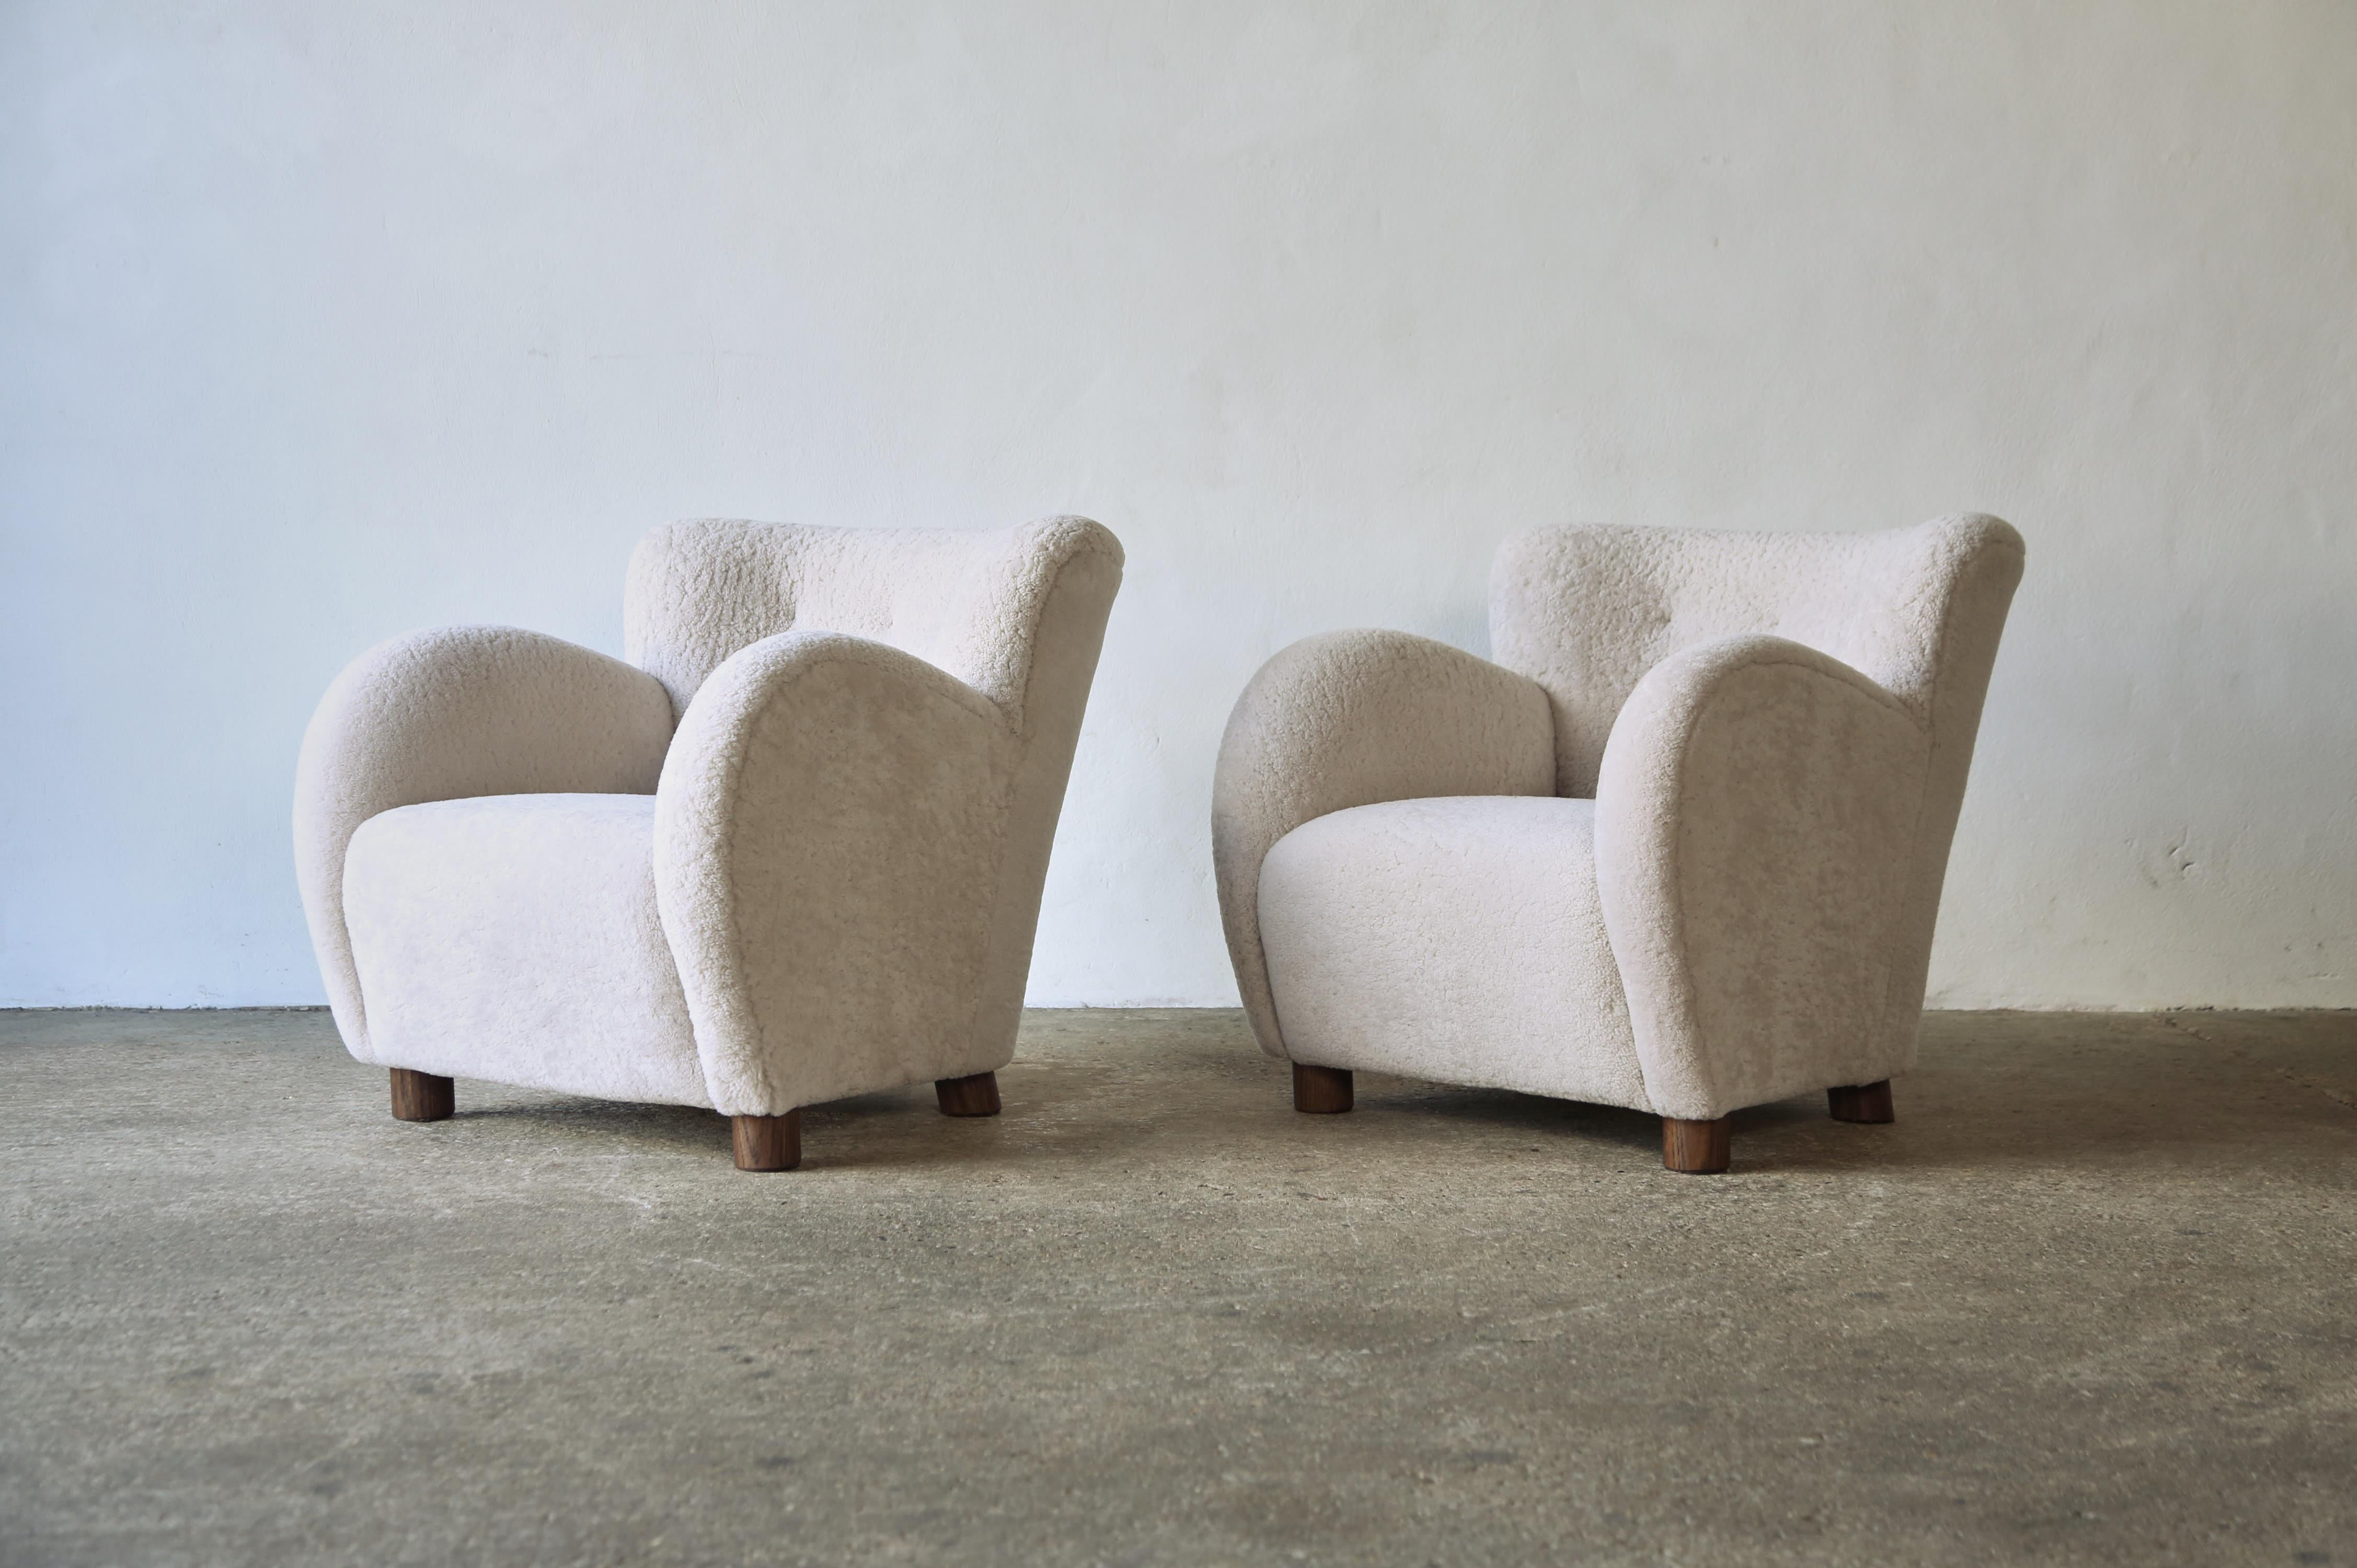 Ein hervorragendes Paar moderner Sessel mit runden Armlehnen.  Handgefertigte Buchenholzrahmen, gefederte Sitze, Füße aus massiver Eiche.  Neu gepolstert mit hochwertigem, weichem, natürlichem australischem Schafsleder.  Schneller Versand